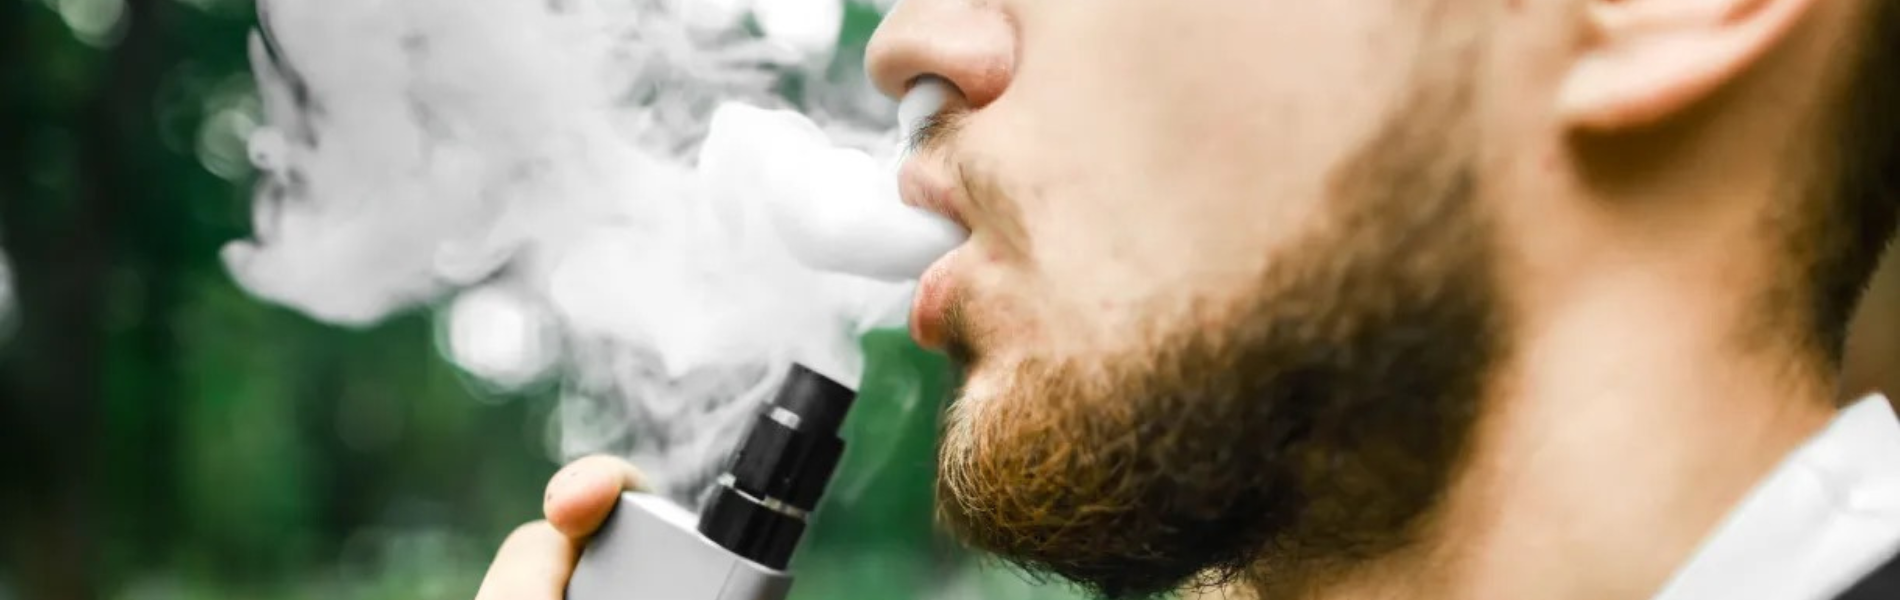 Foto de homem segurando um cigarro eletrônico e soltando fumaça pela boca e nariz